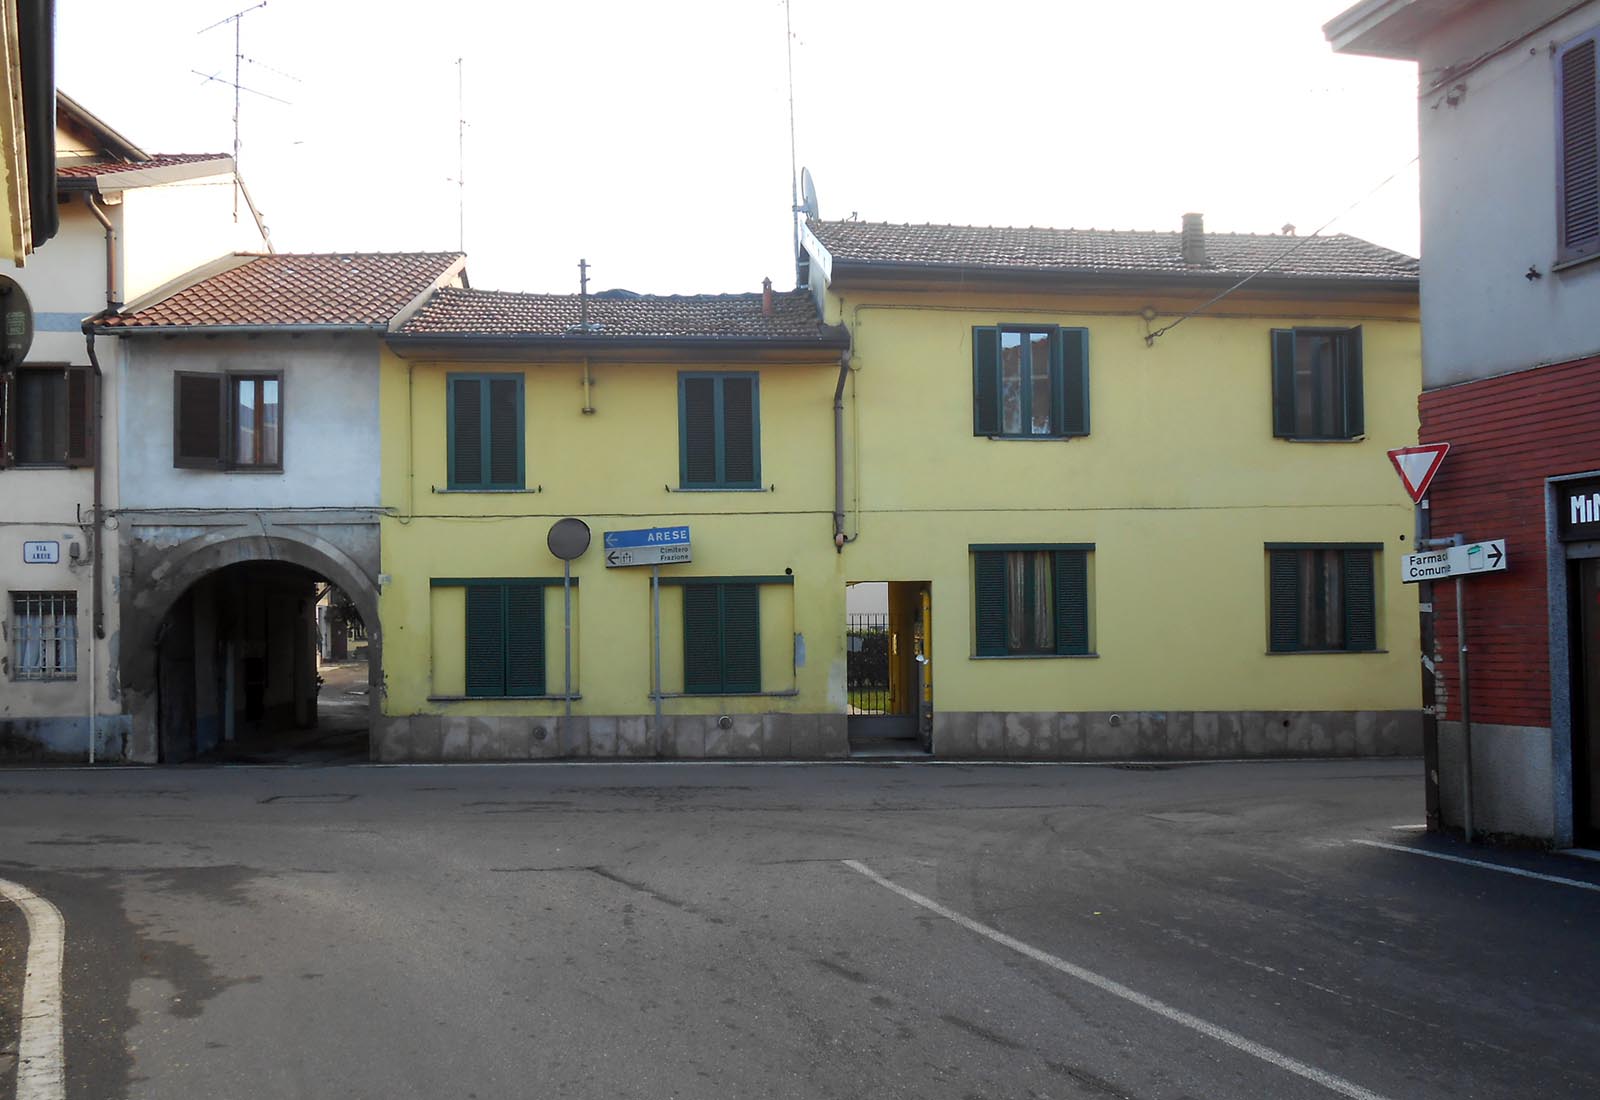 Antica corte in Terrazzano - View